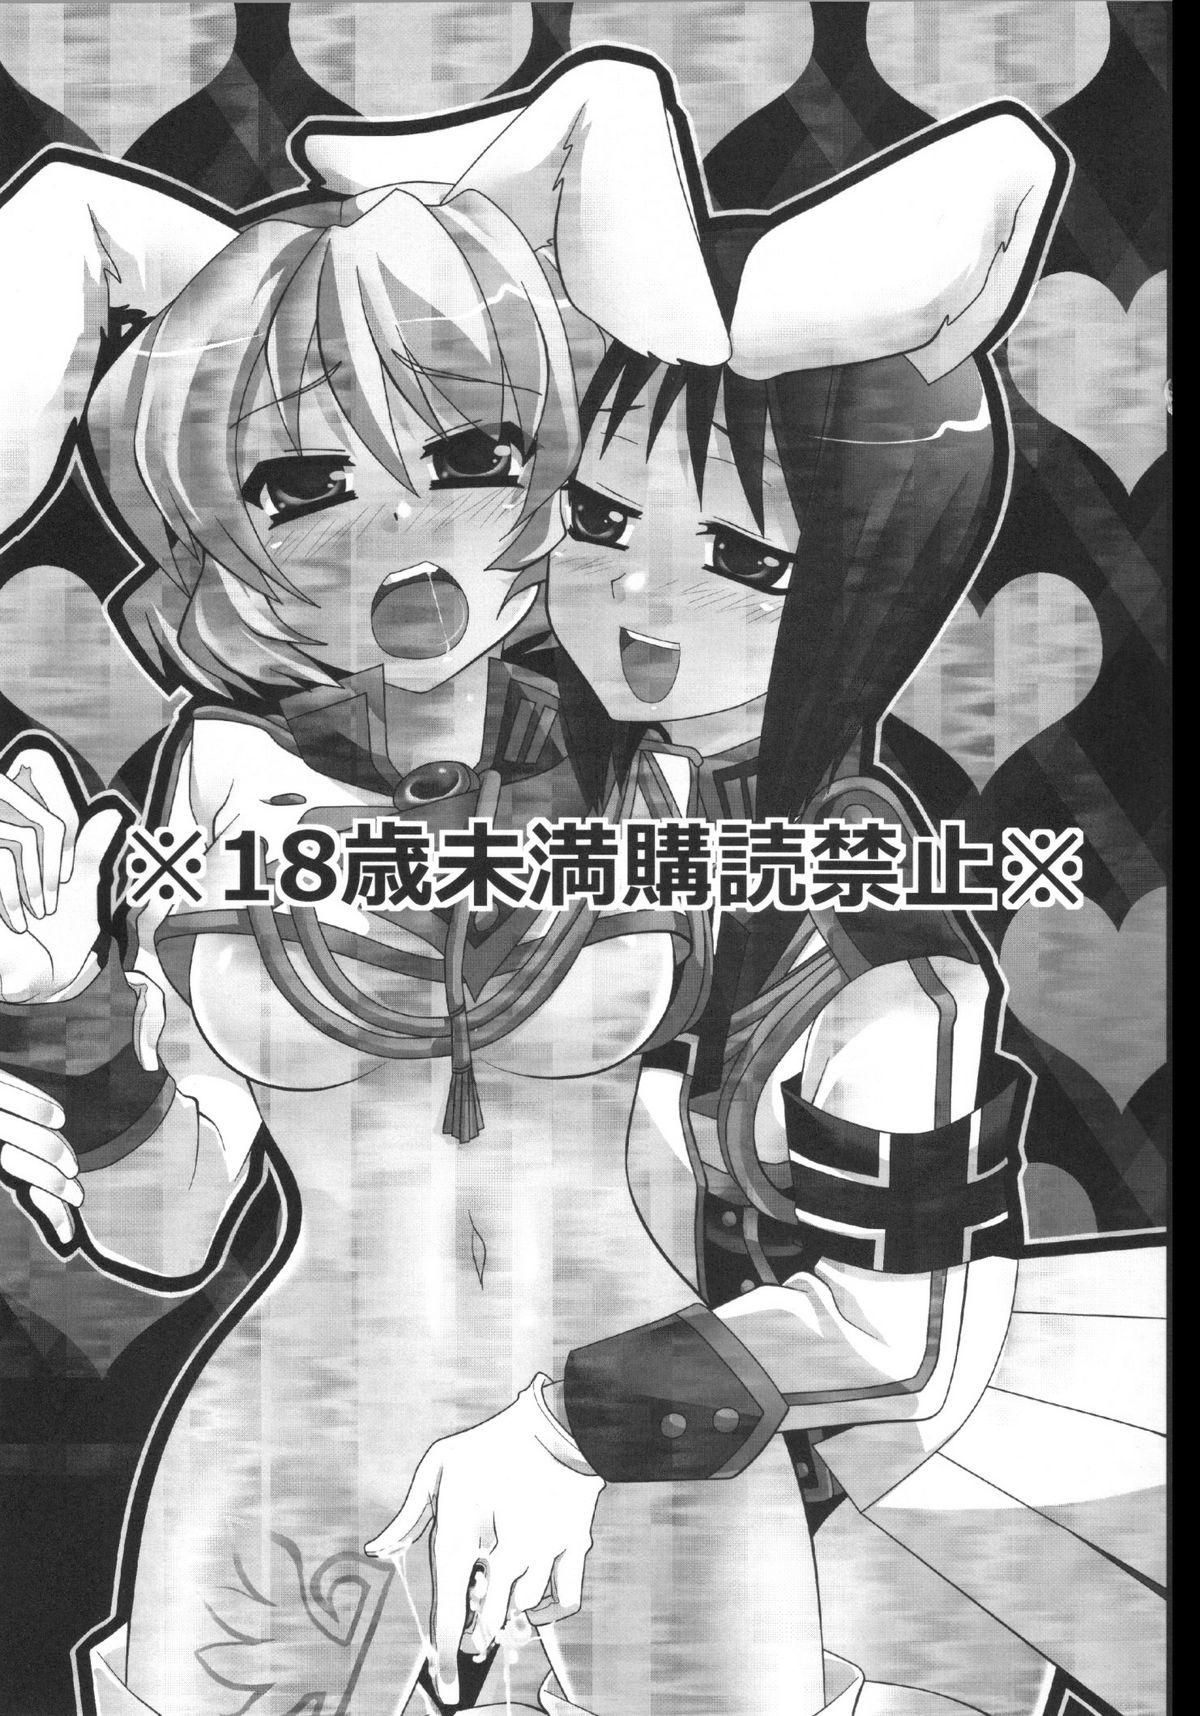 Culo Grande RabiRabi - Umineko no naku koro ni Youth Porn - Page 2